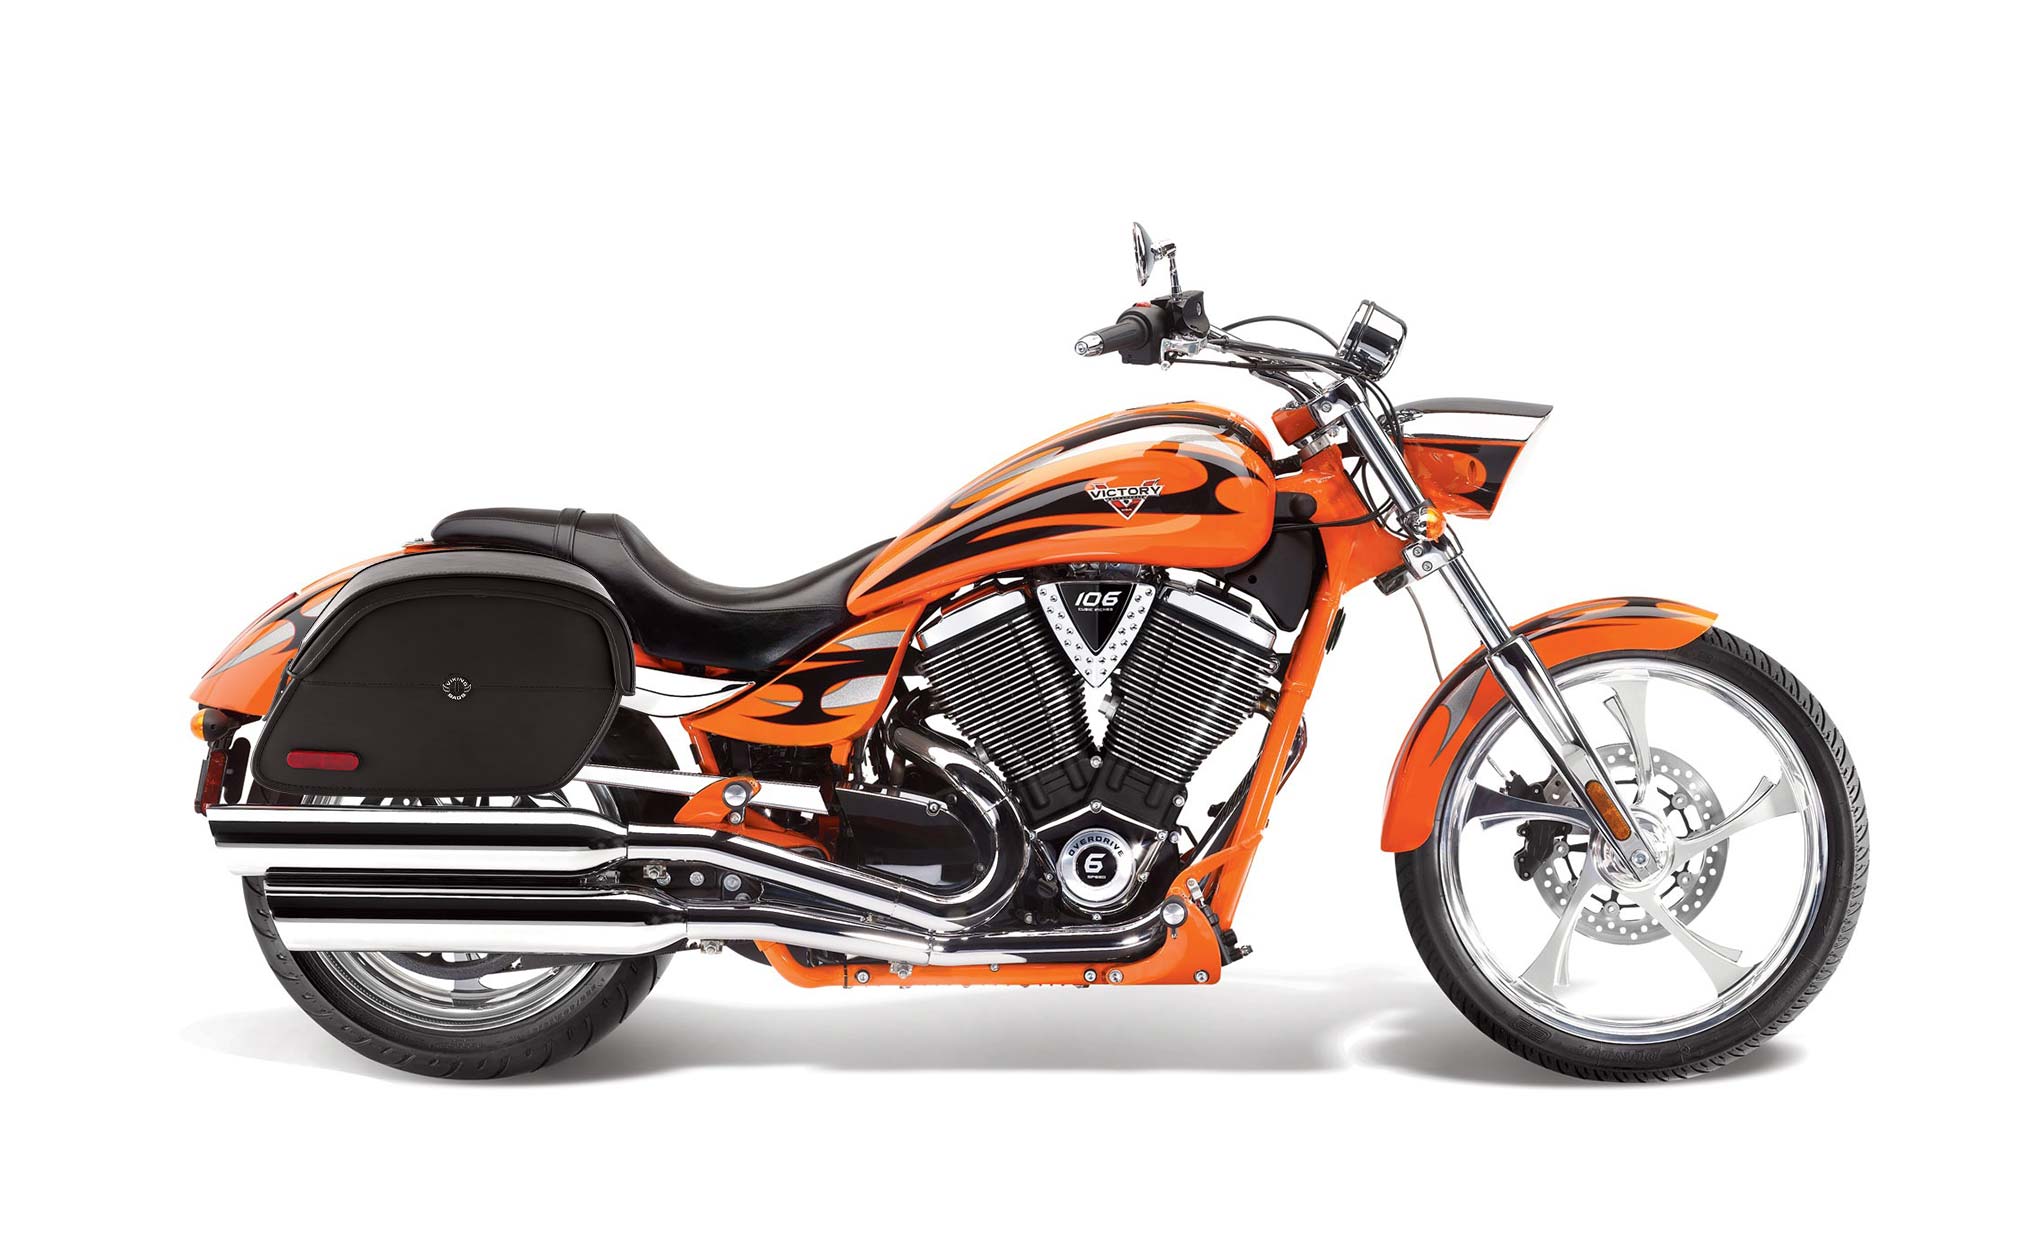 Viking California Large Victory Jackpot Leather Motorcycle Saddlebags on Bike Photo @expand